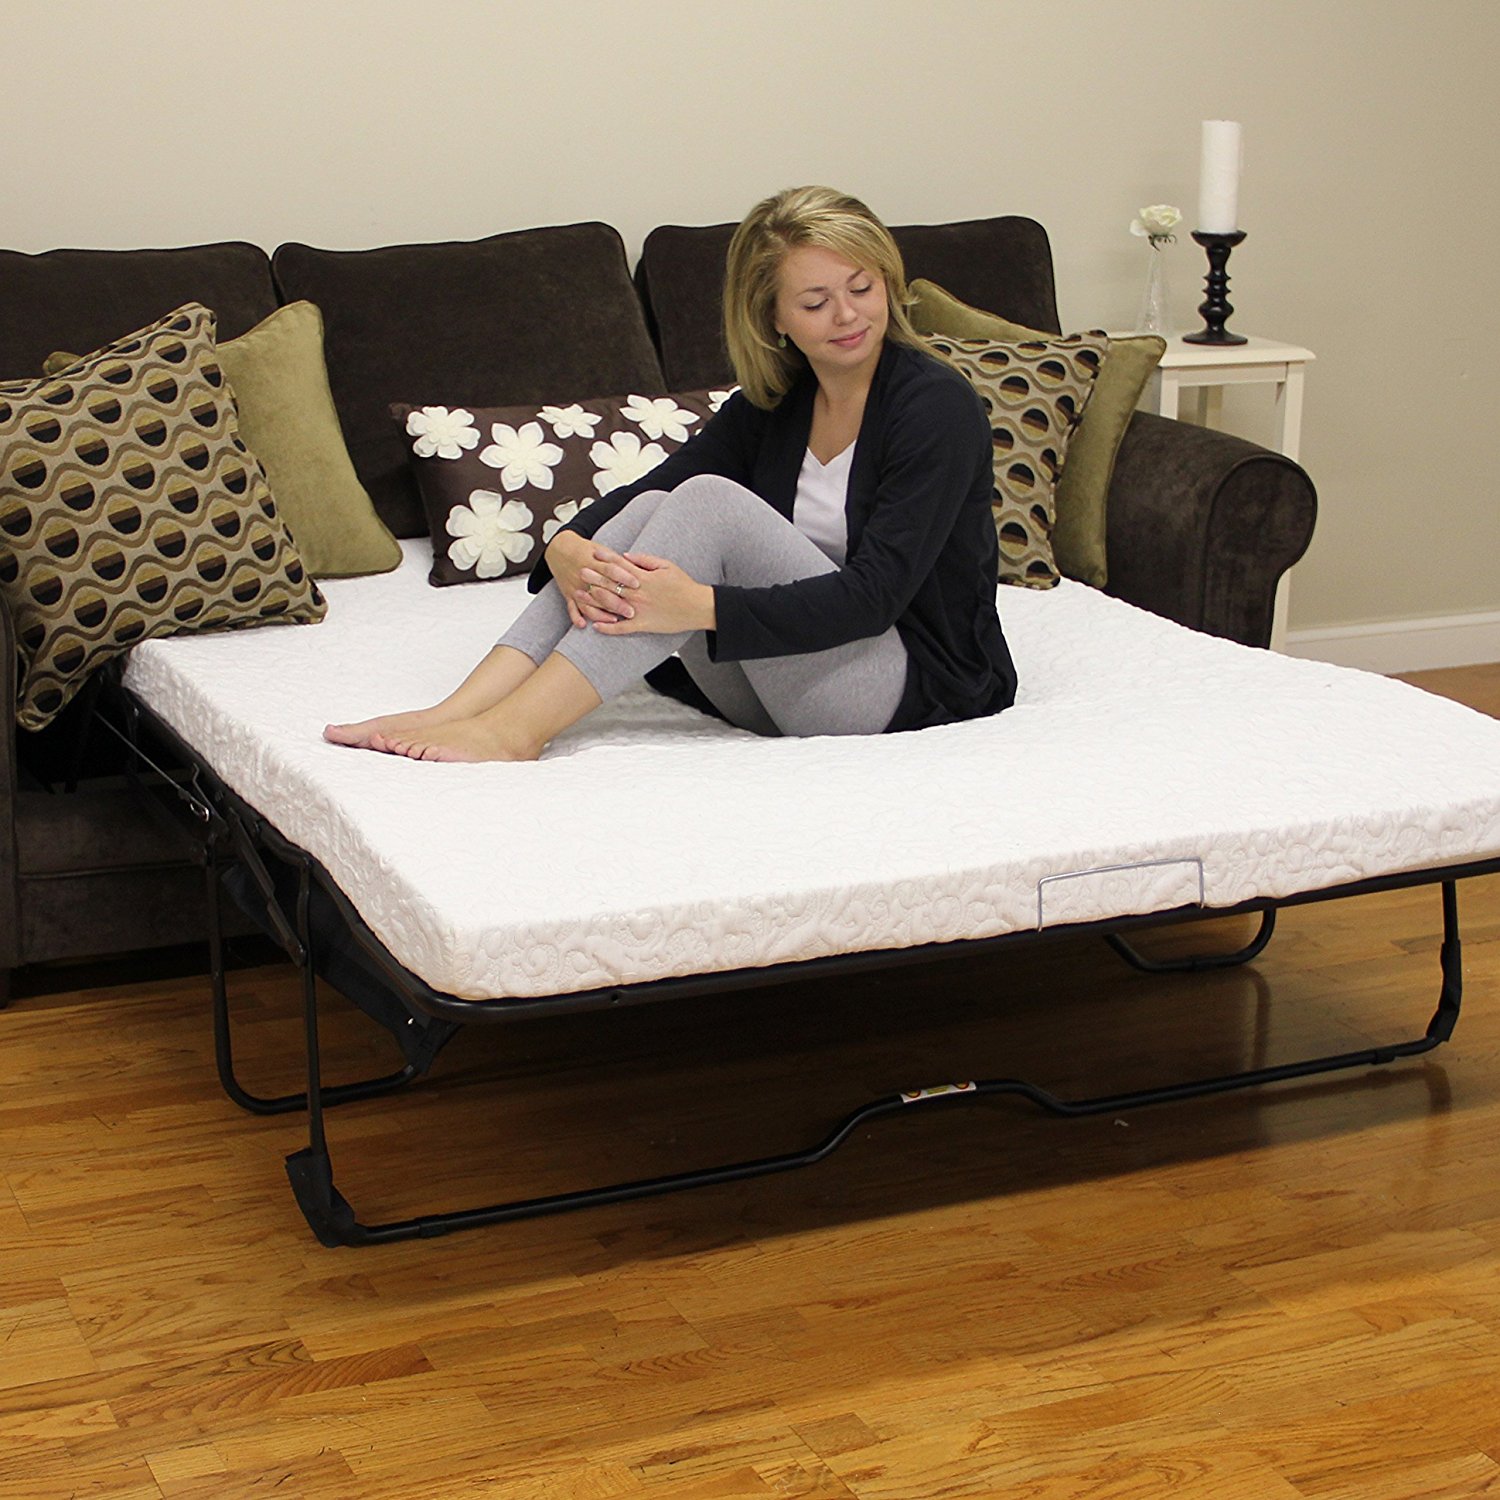 Как выбрать правильный диван для сна - советы от специалистов MatraSon